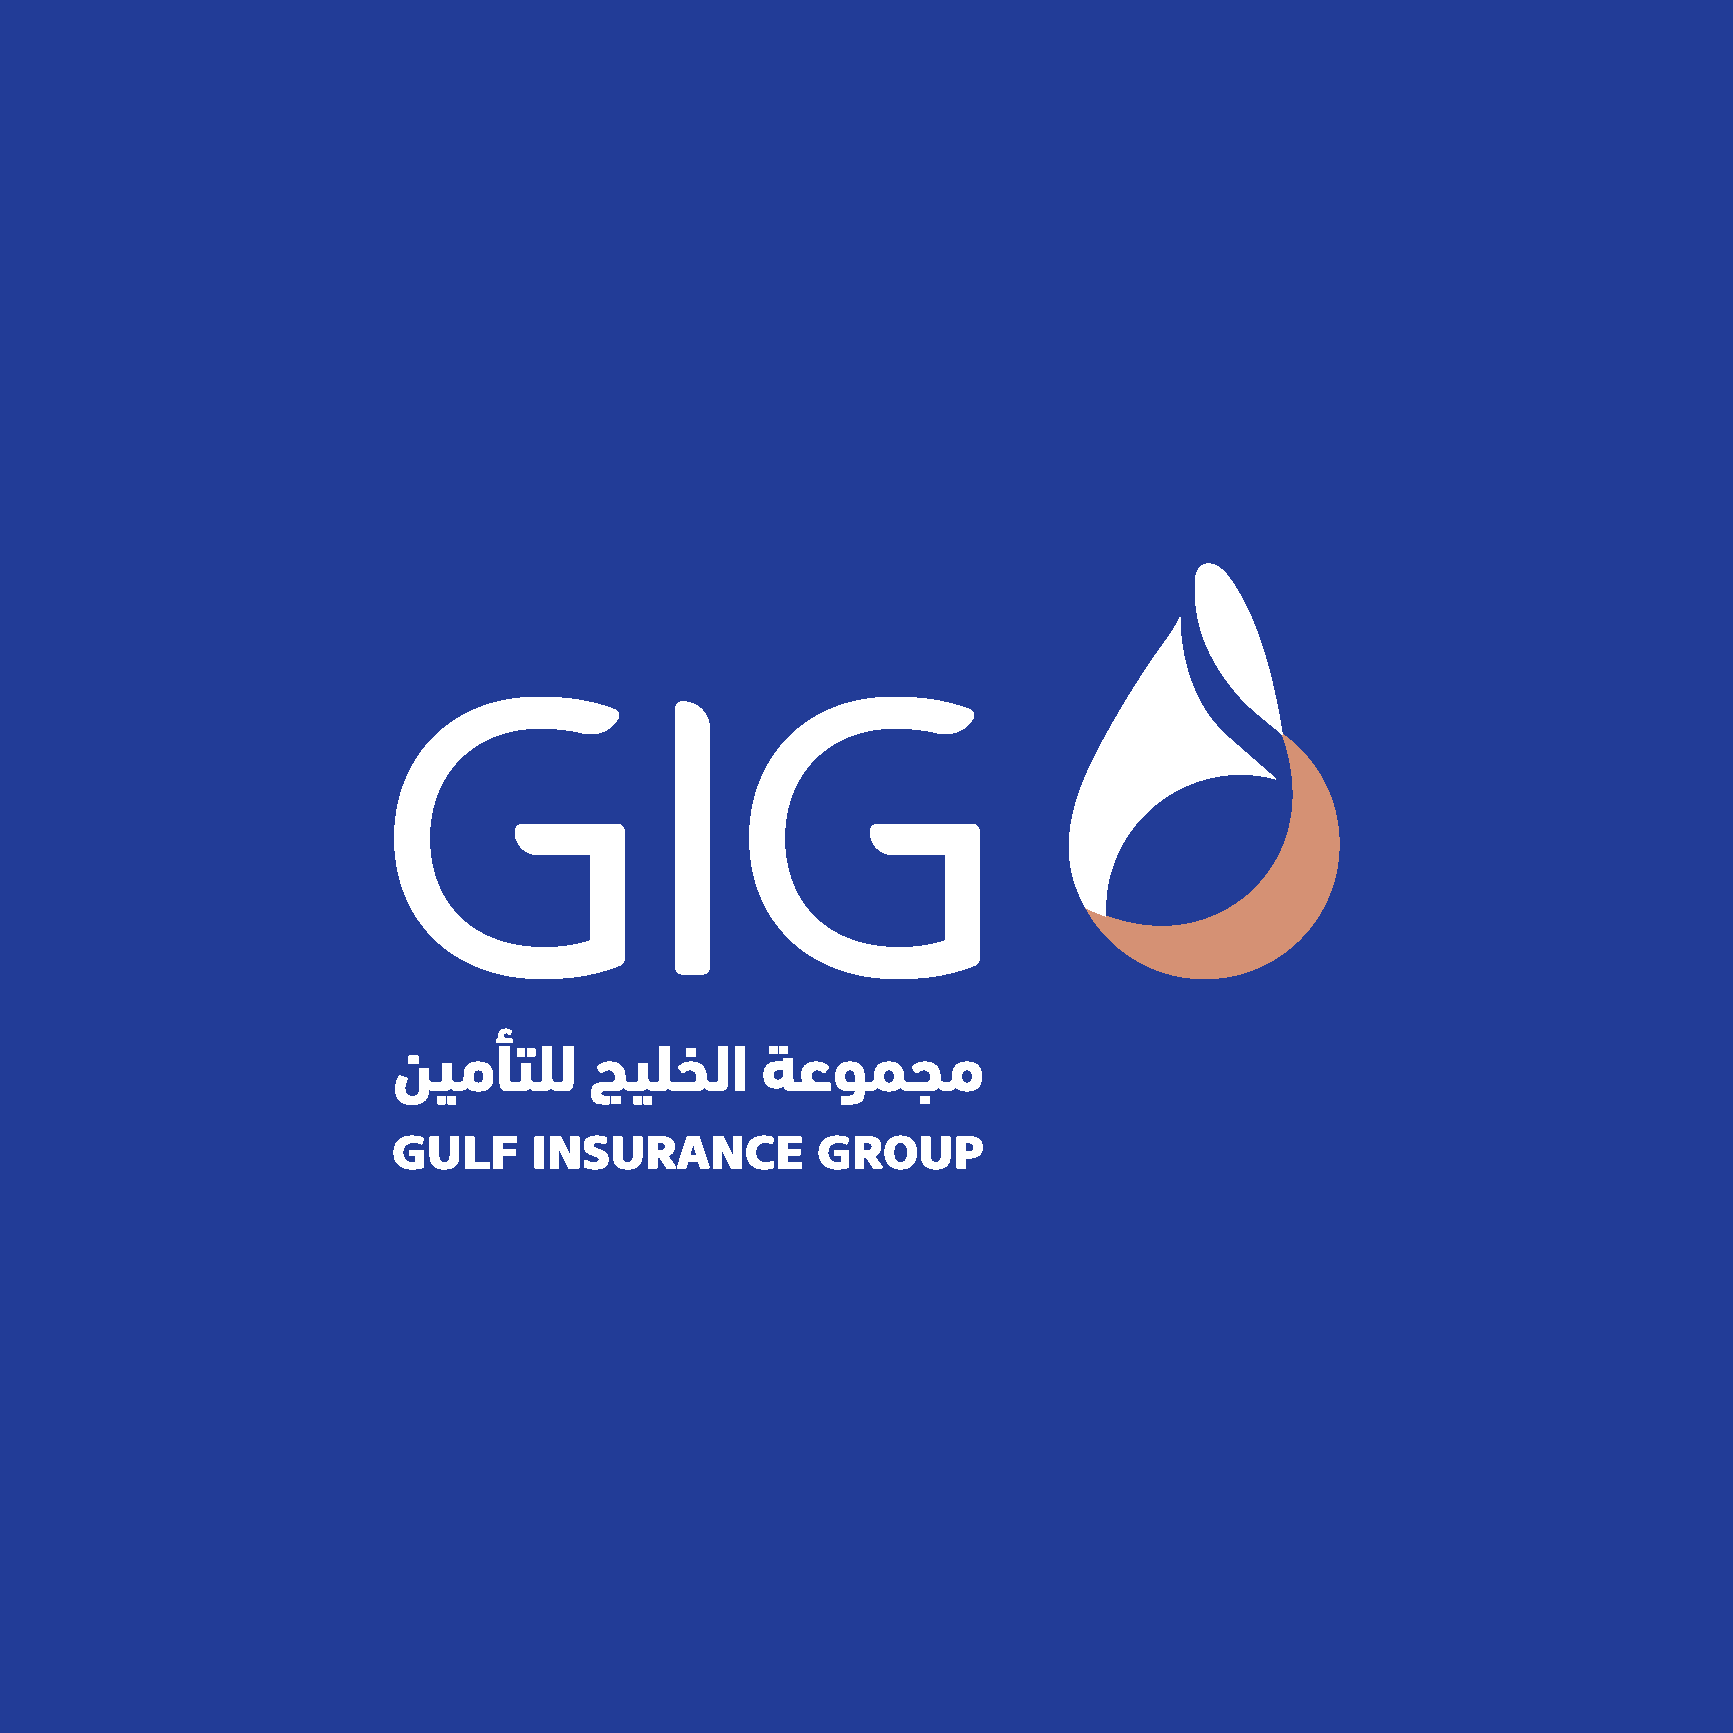 Gulf Insurance Group Logo